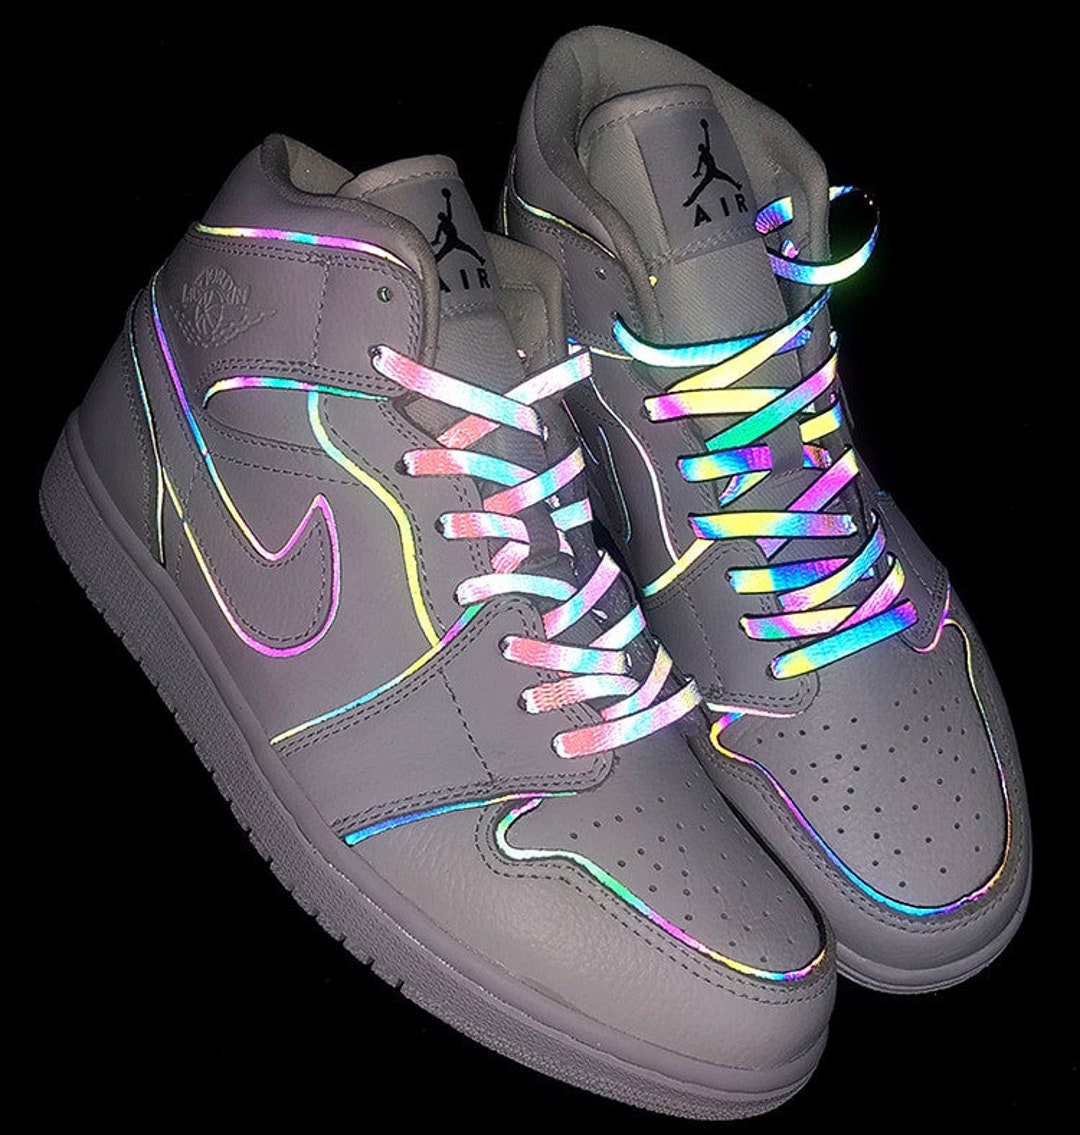 iridescent shoes jordans